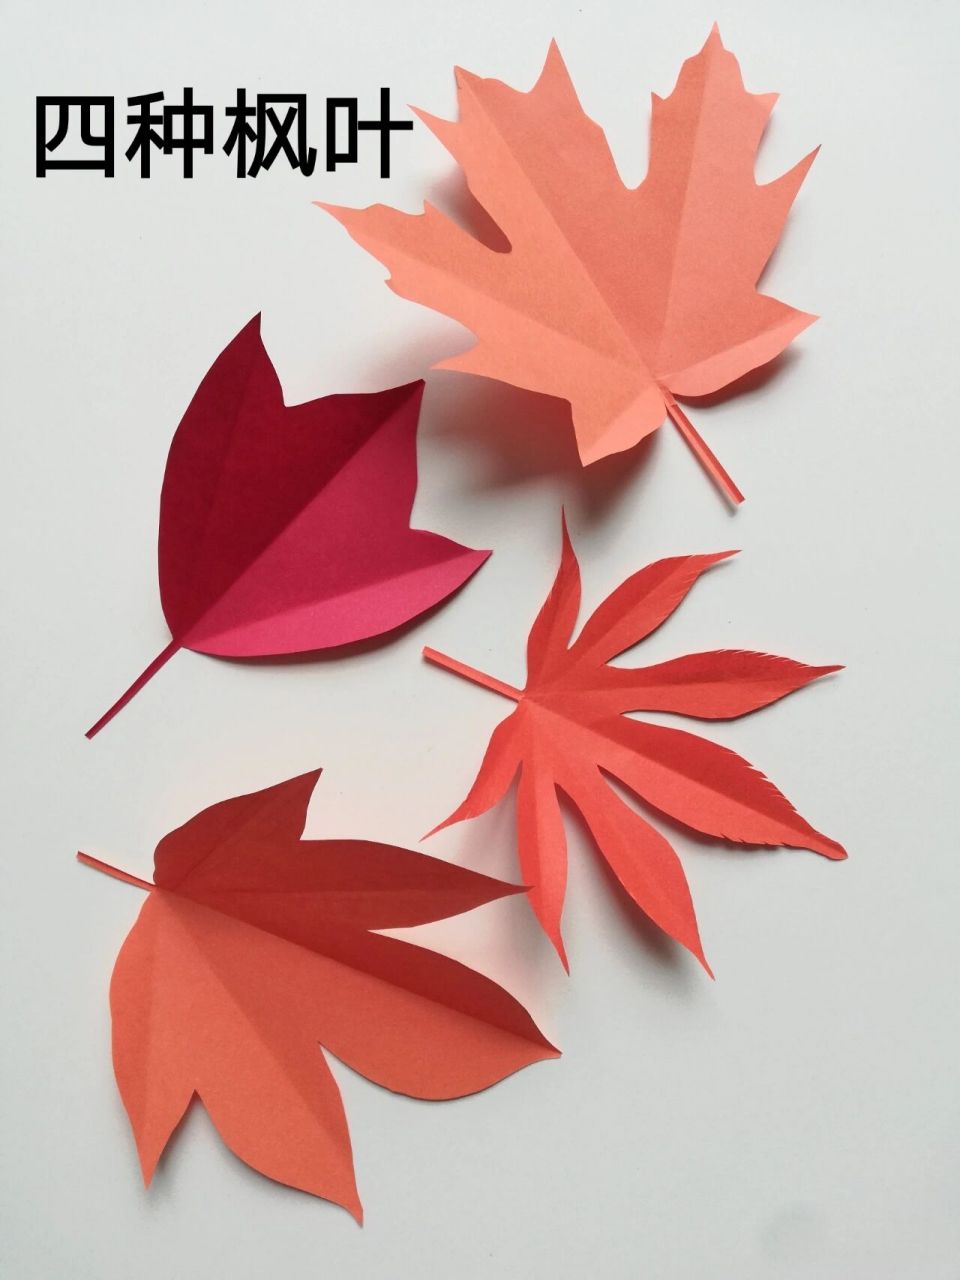 枫叶剪纸 四种不同做法 对边剪纸 简单手工 普通正方形折纸,对折,画出